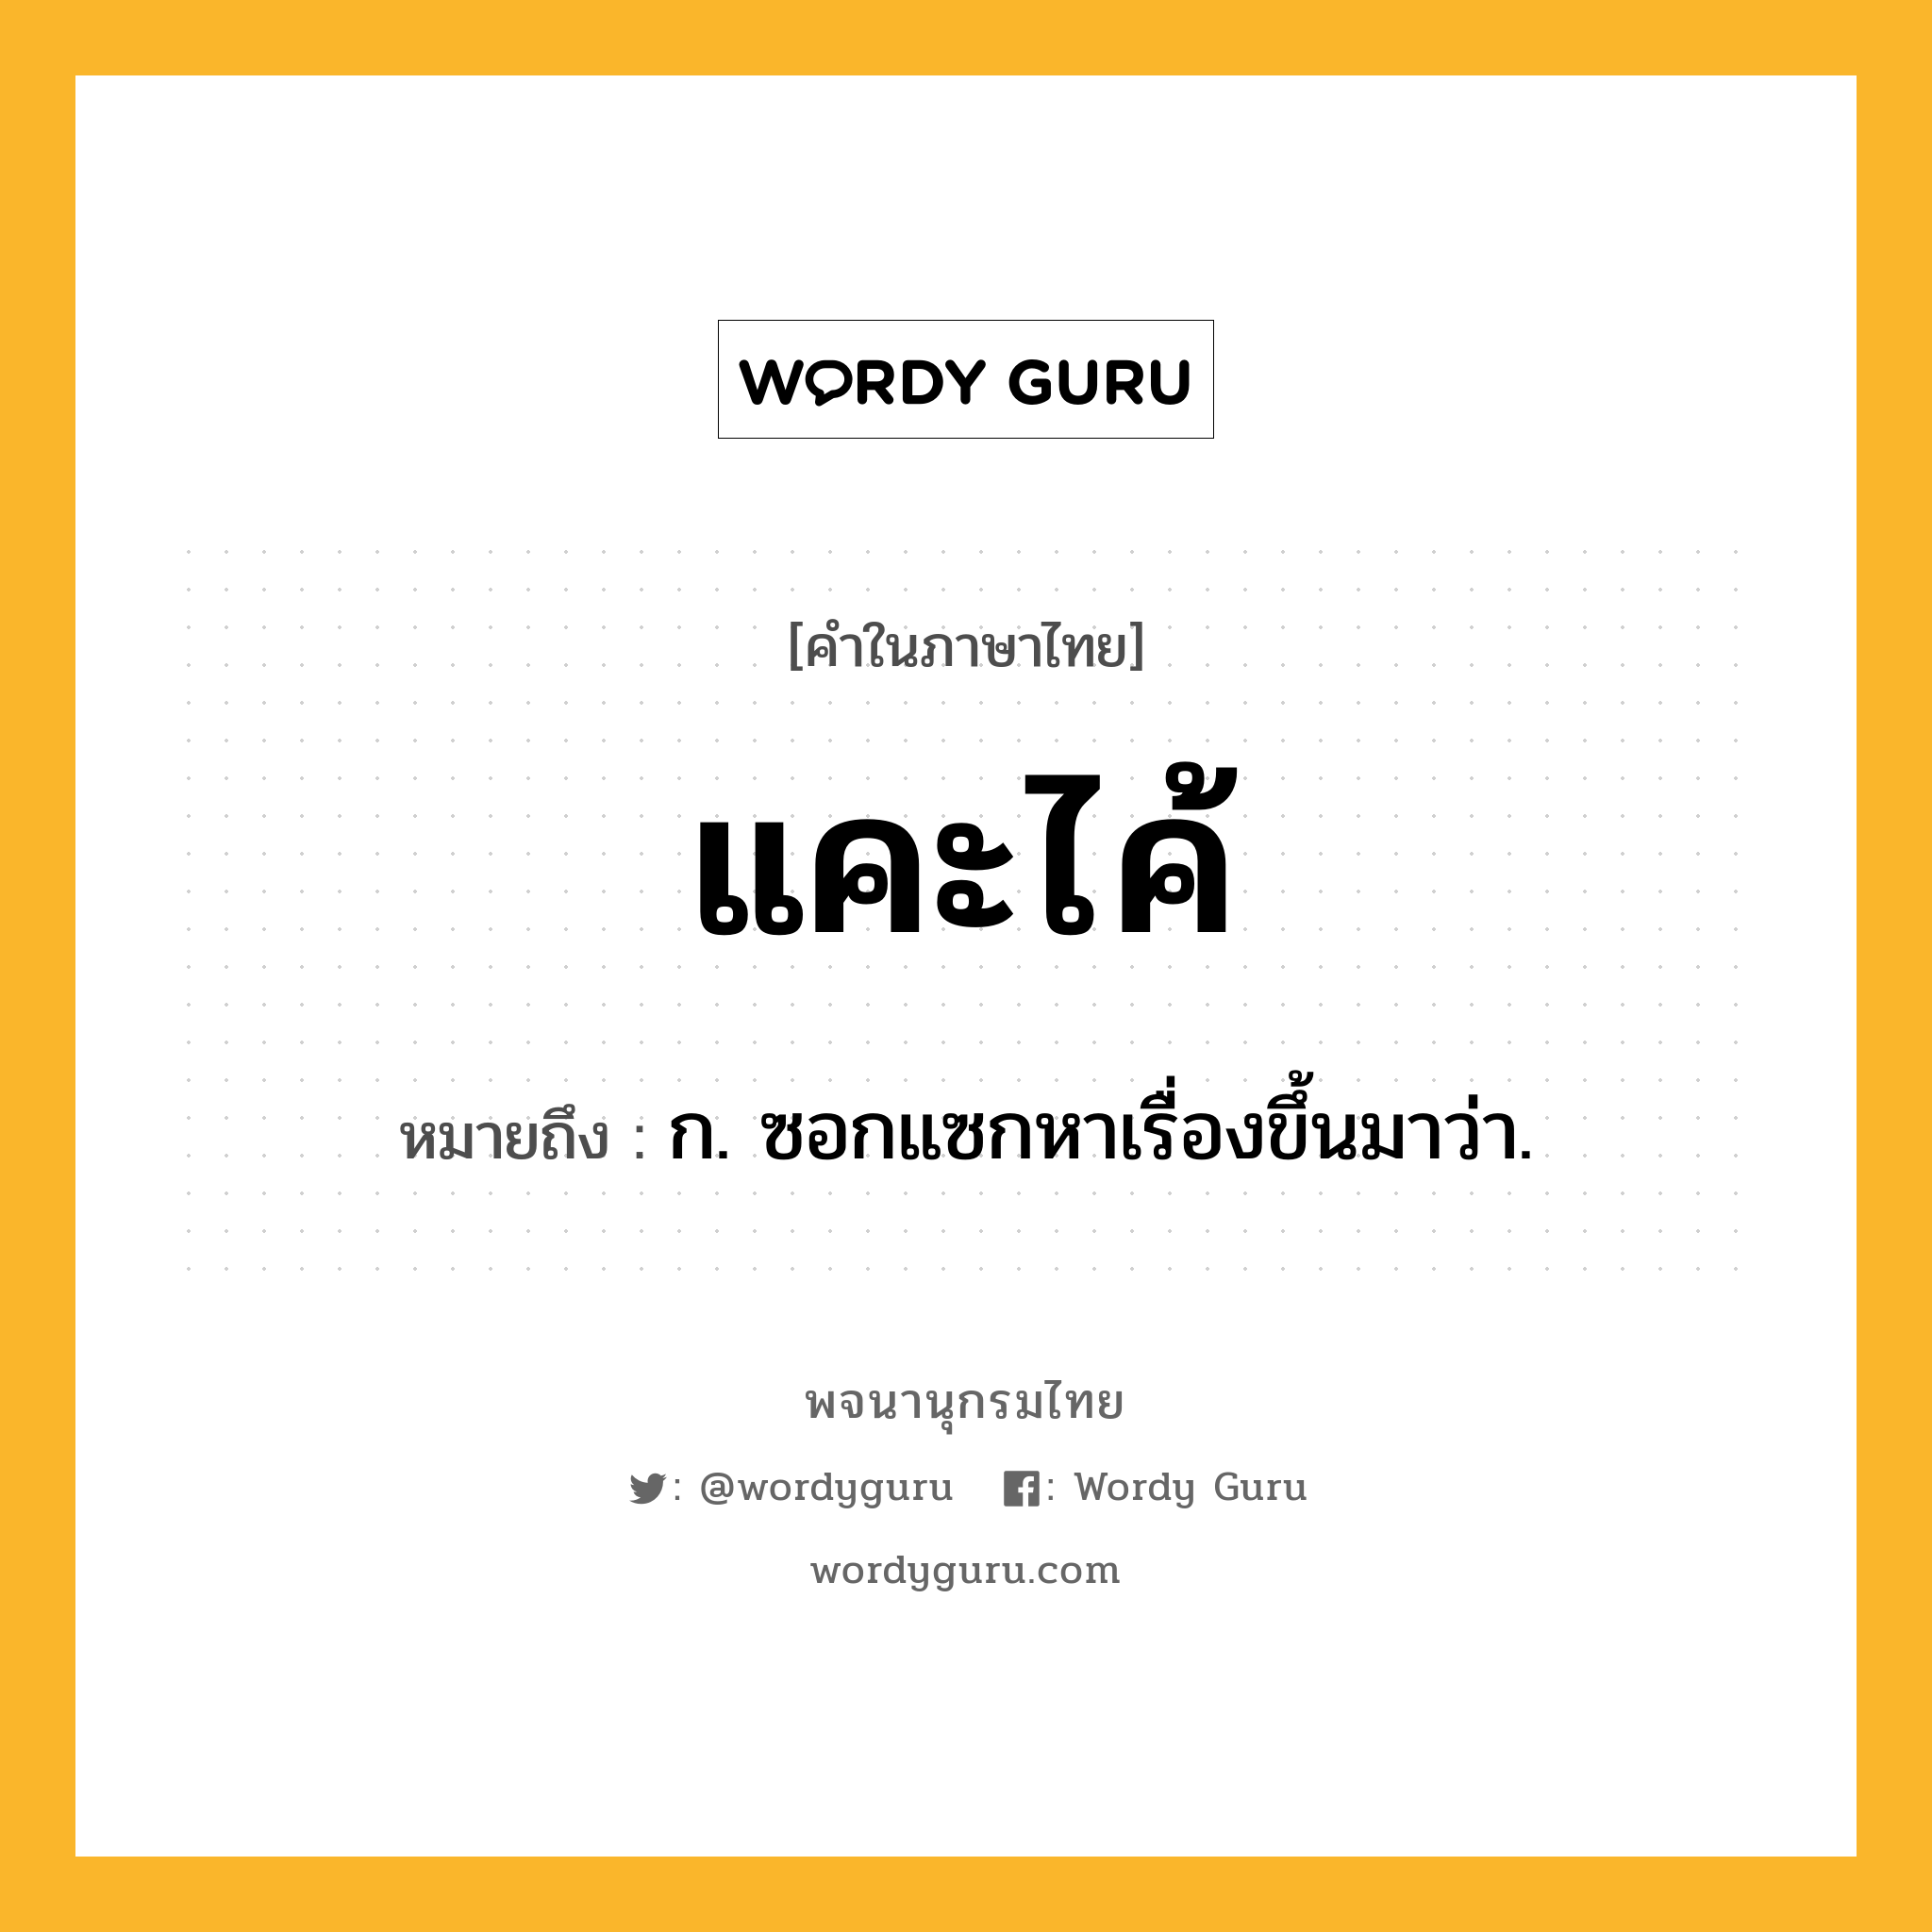 แคะไค้ ความหมาย หมายถึงอะไร?, คำในภาษาไทย แคะไค้ หมายถึง ก. ซอกแซกหาเรื่องขึ้นมาว่า.